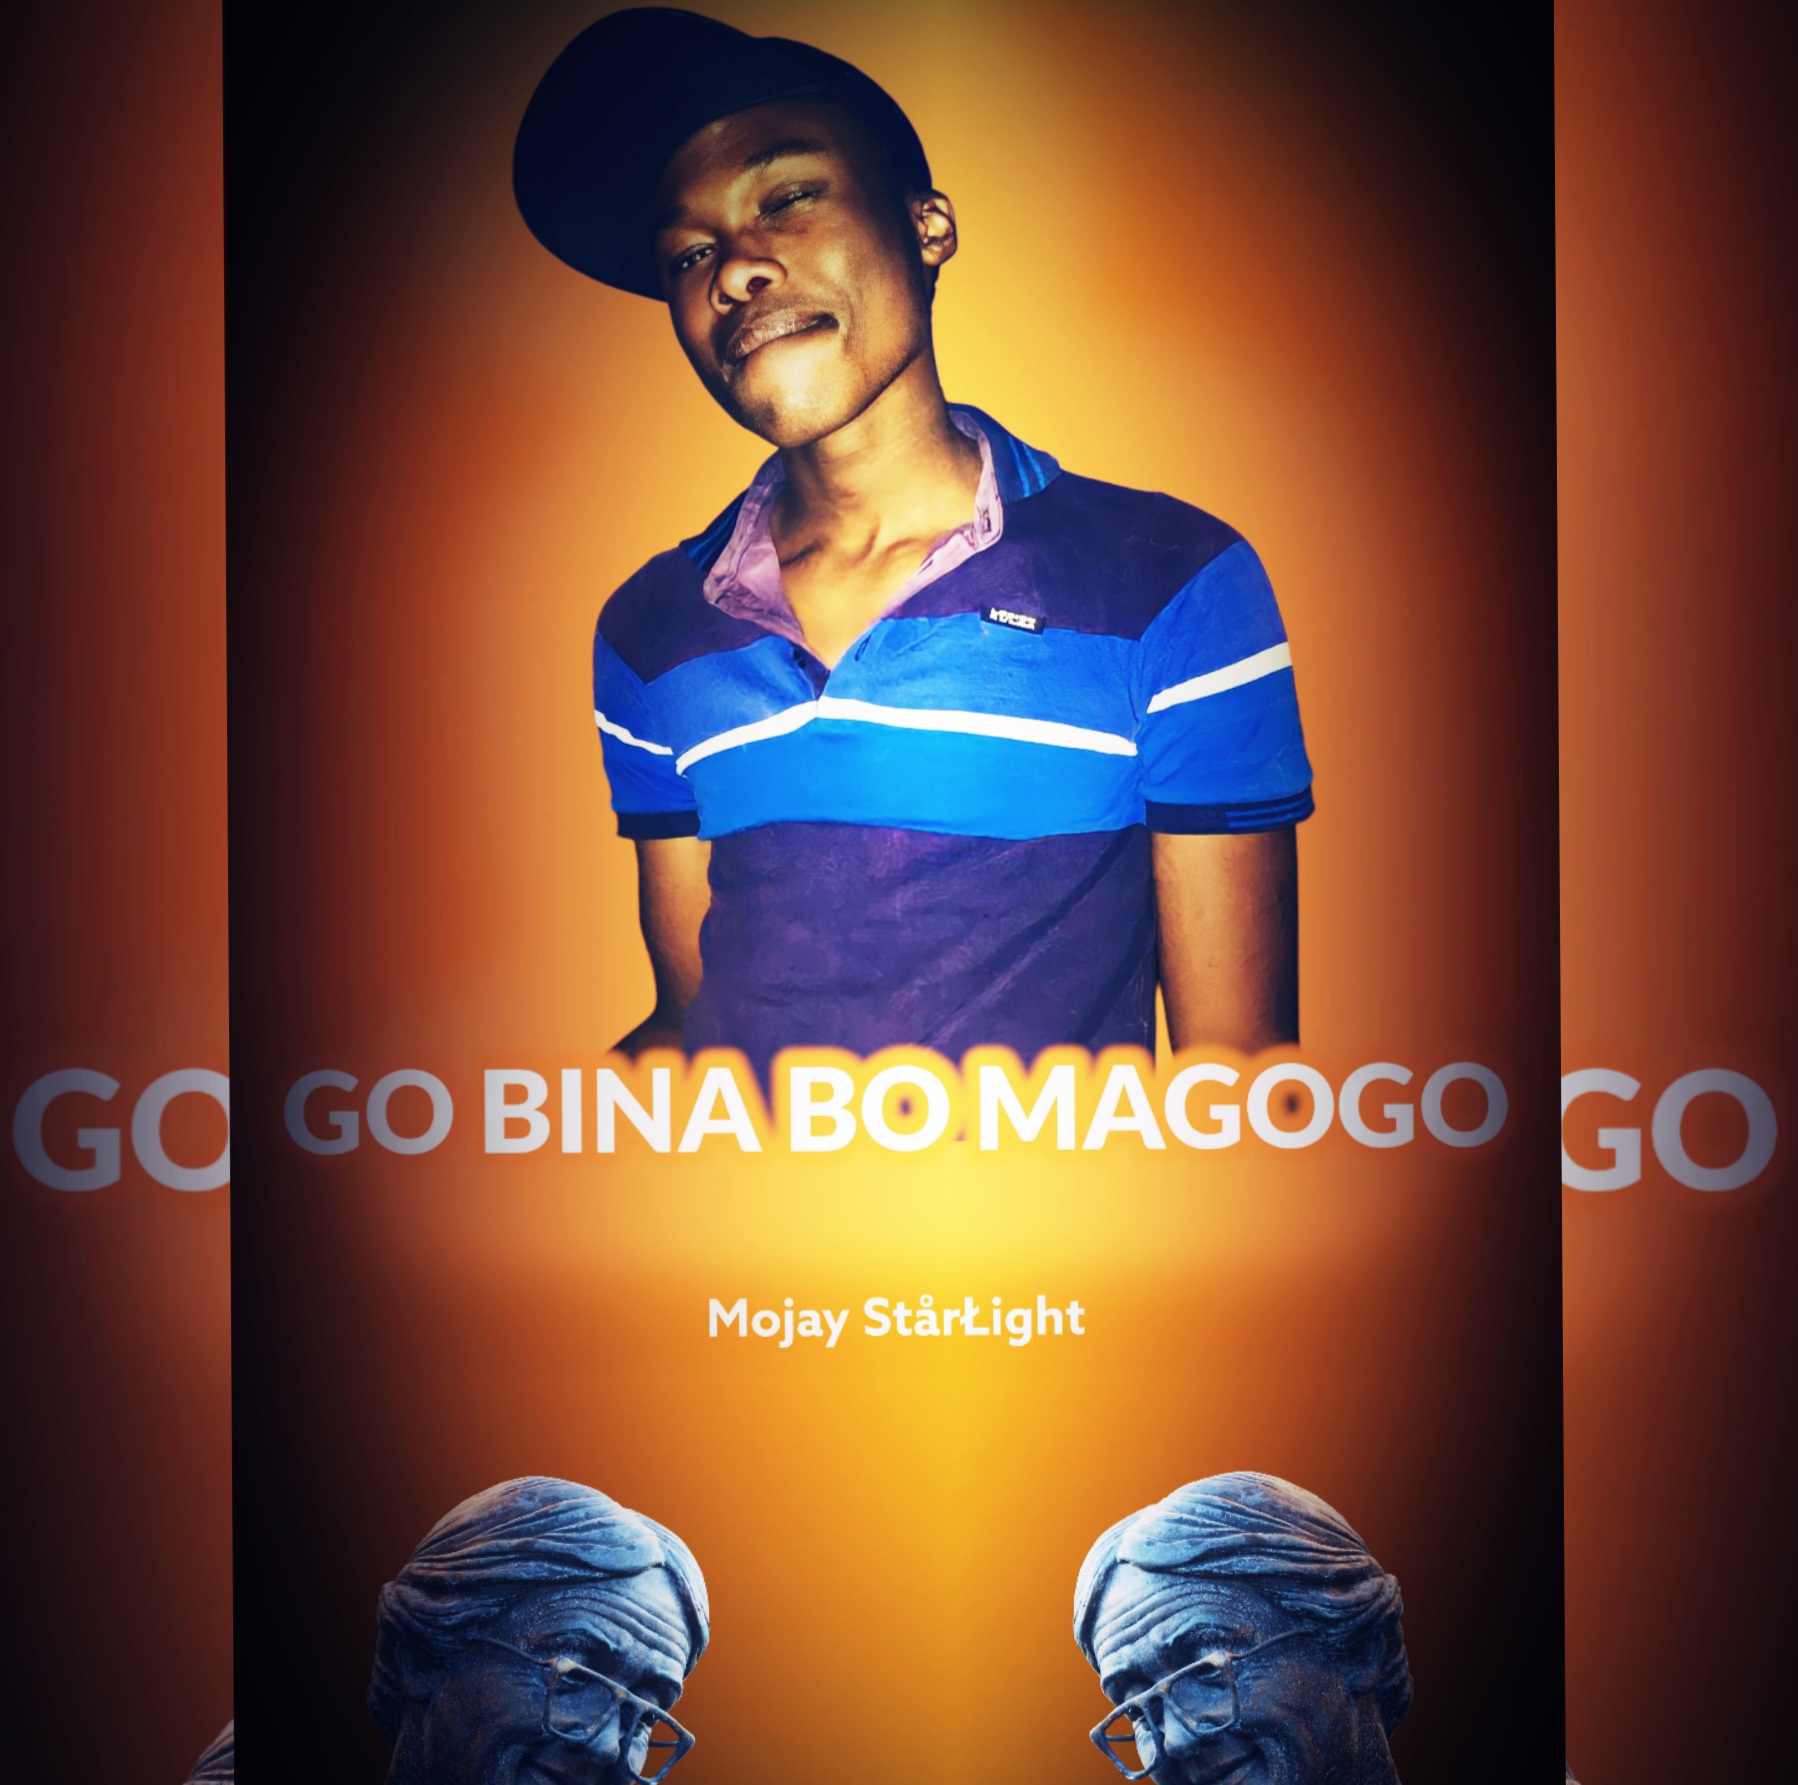 GO_BINA_BO_MAGOGO - MoJay StarŁight